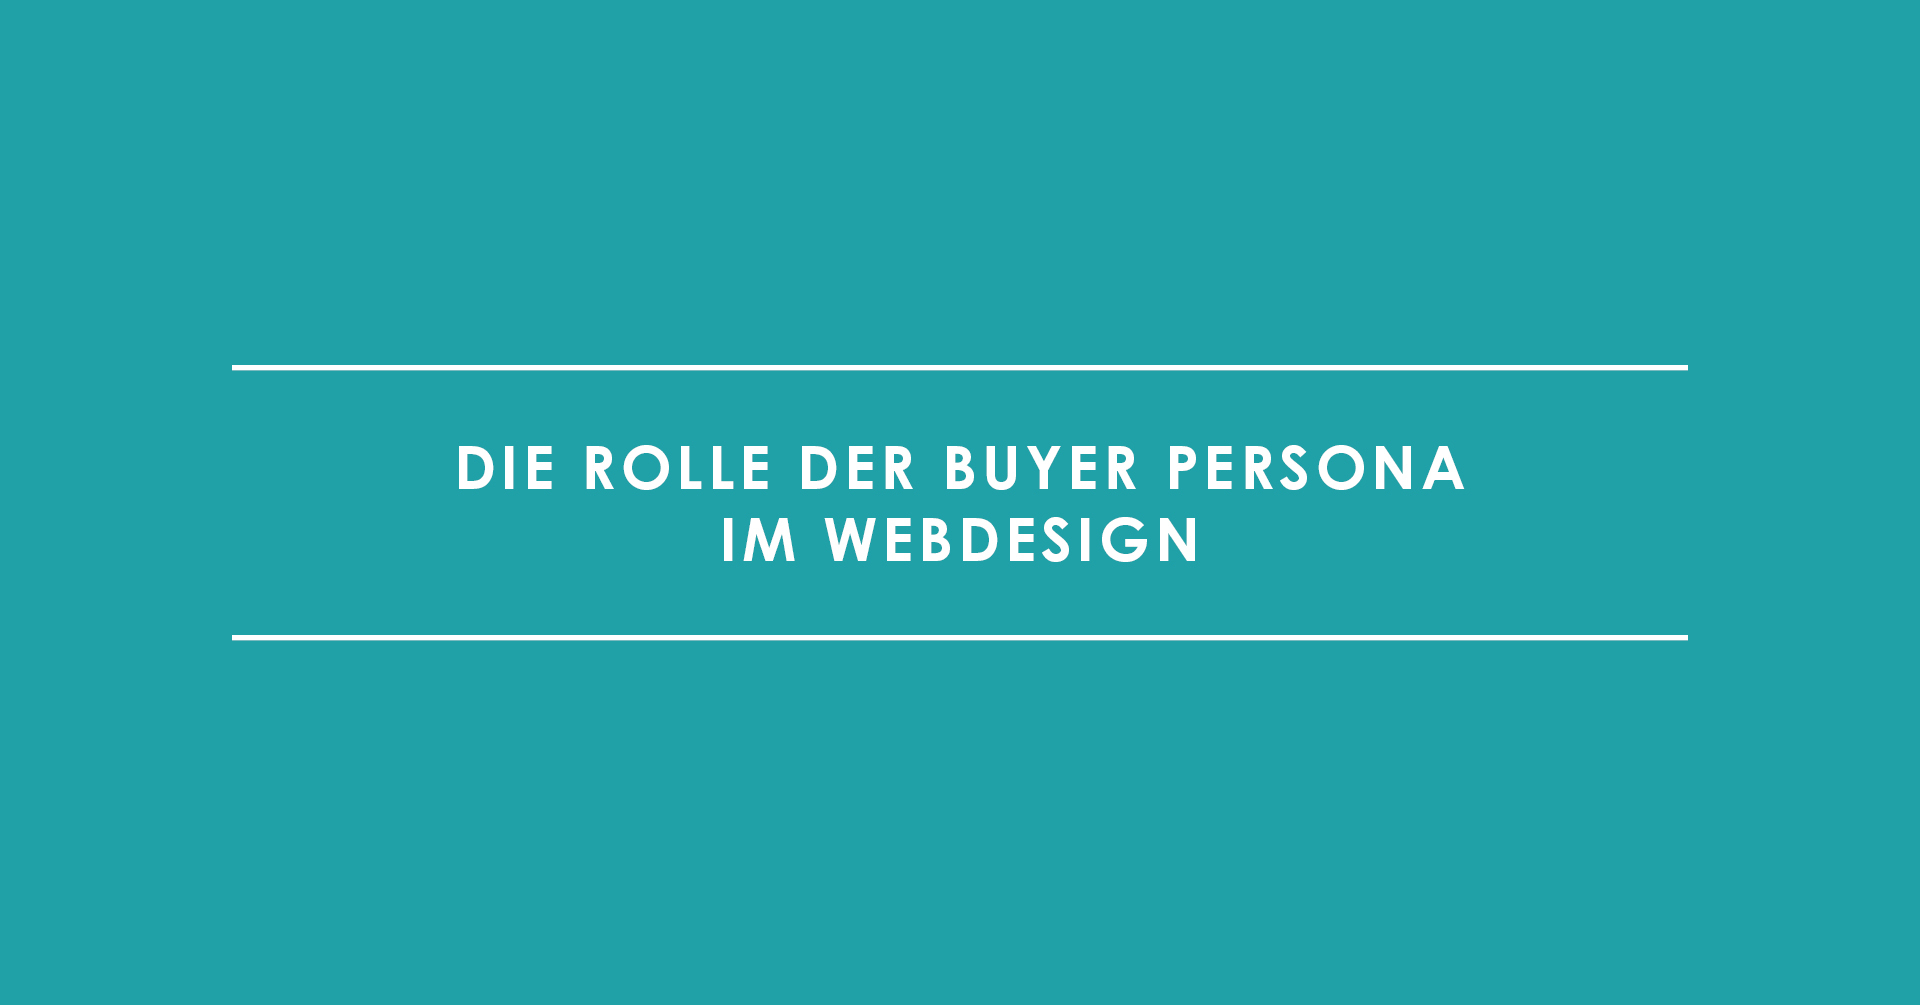 Die Rolle der Buyer Persona im Webdesign